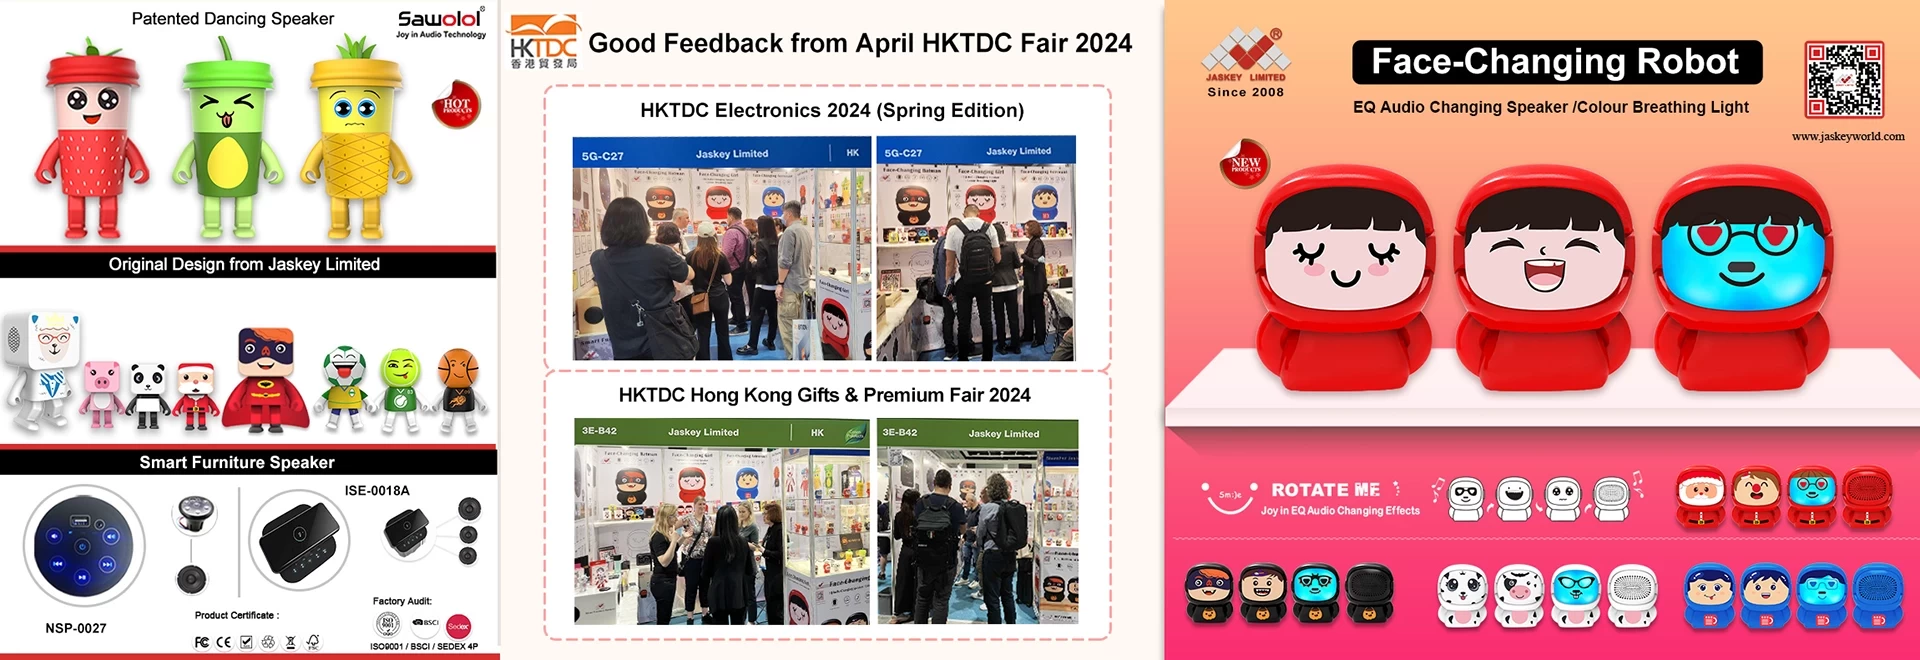 Bons retours de HKTDC Electronics 2024 (édition de printemps) et du salon des cadeaux et des primes